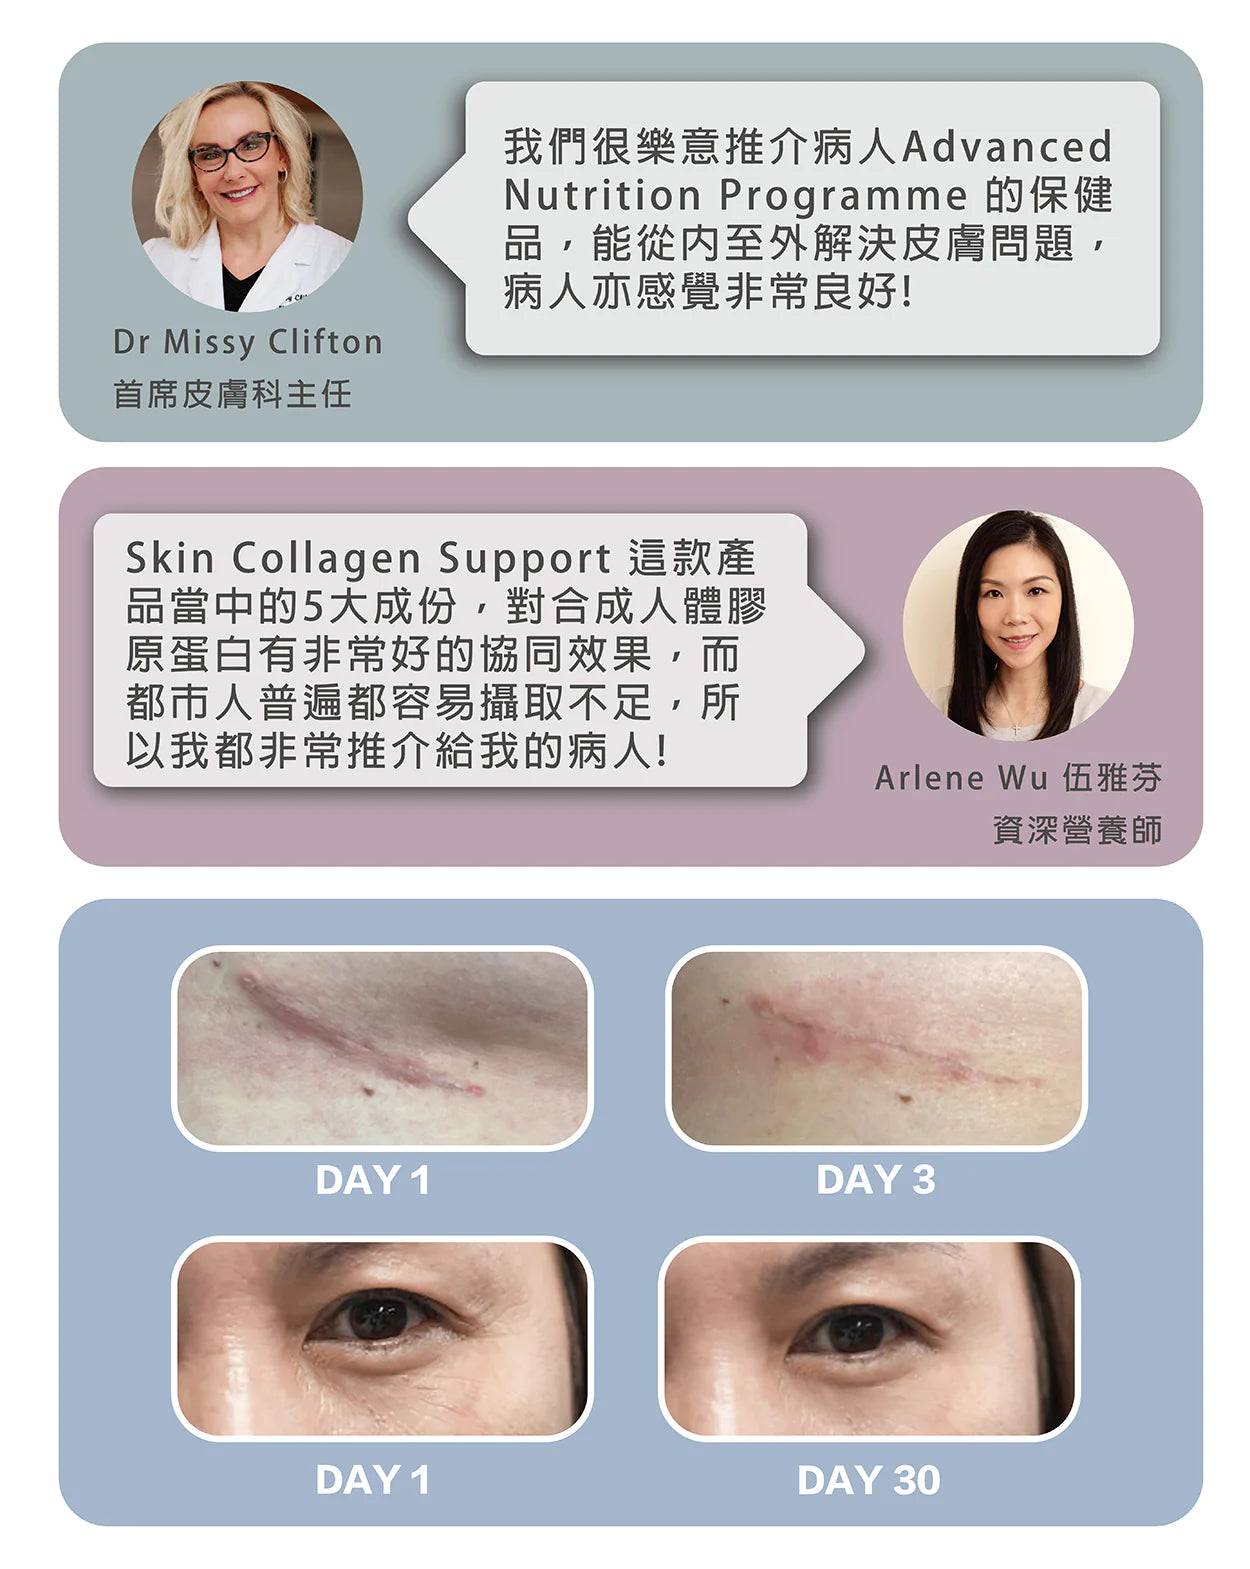 ANP Skin Collagen Support